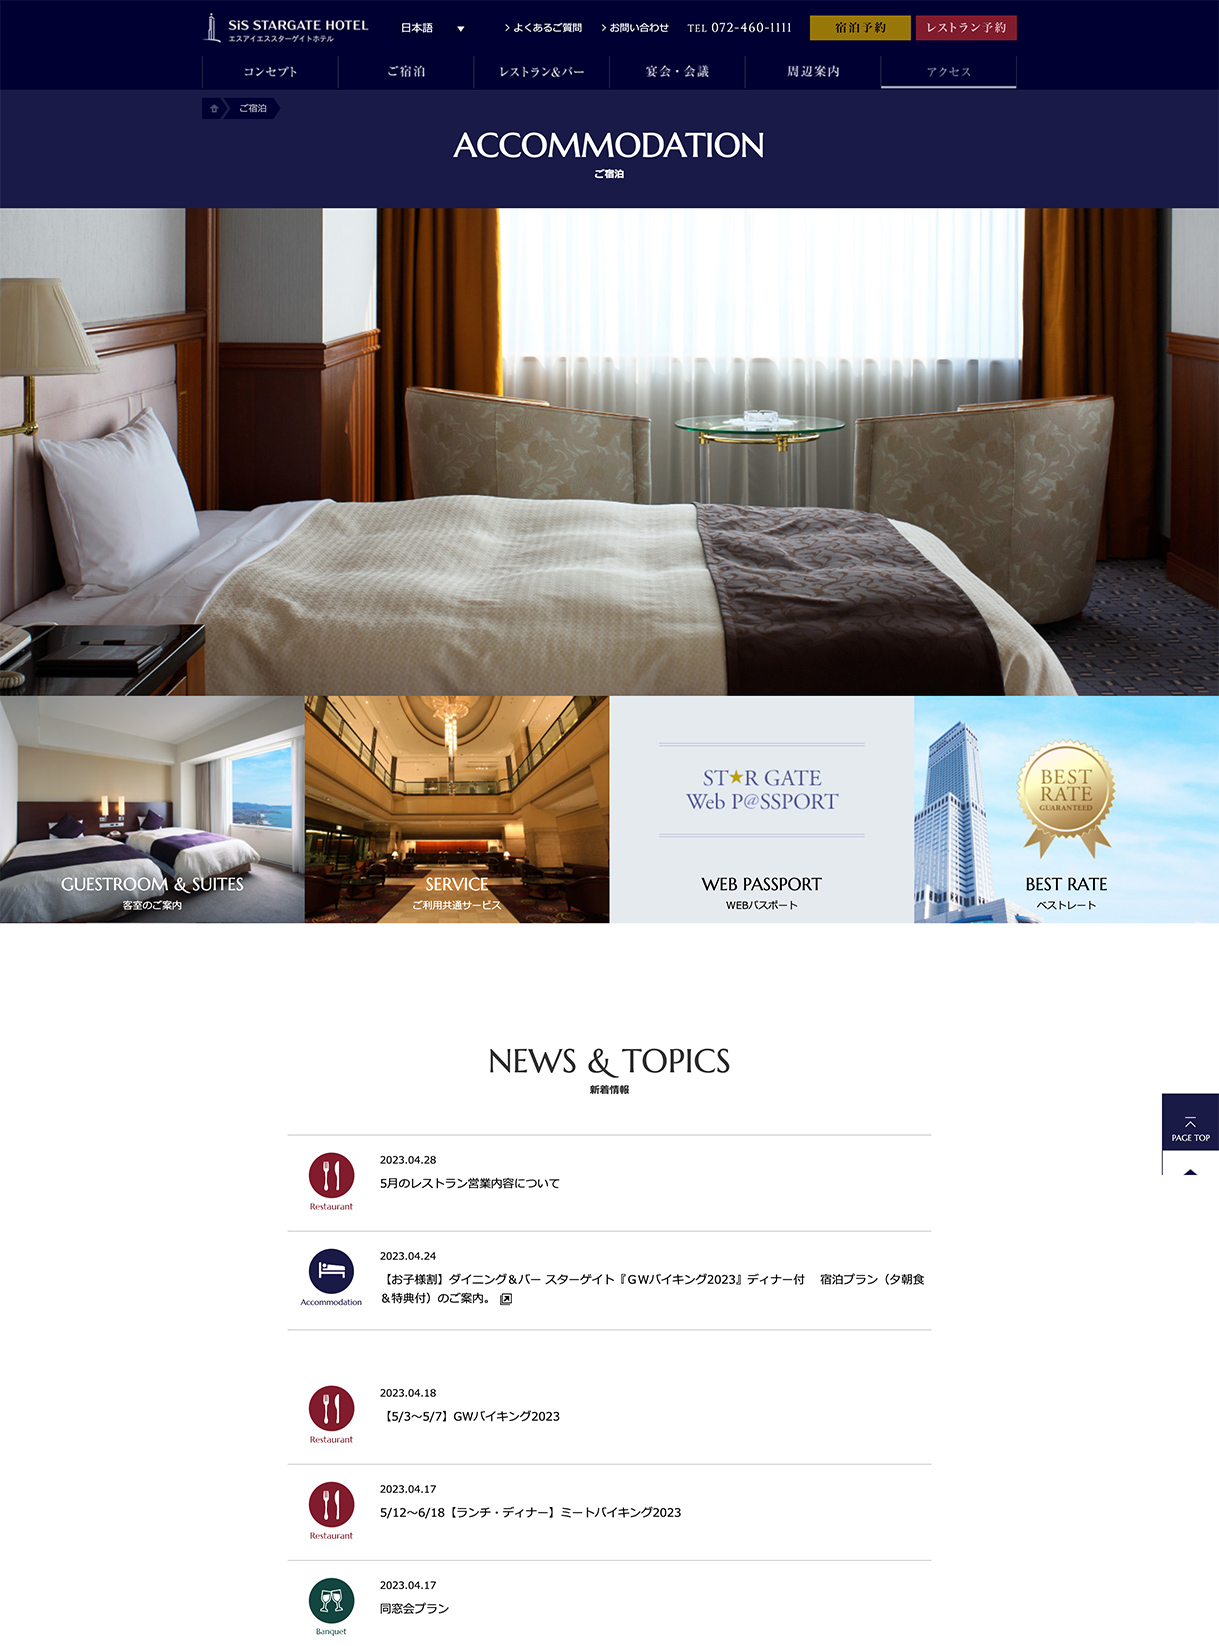 スターゲイトホテル関西エアポートwebサイトの画像